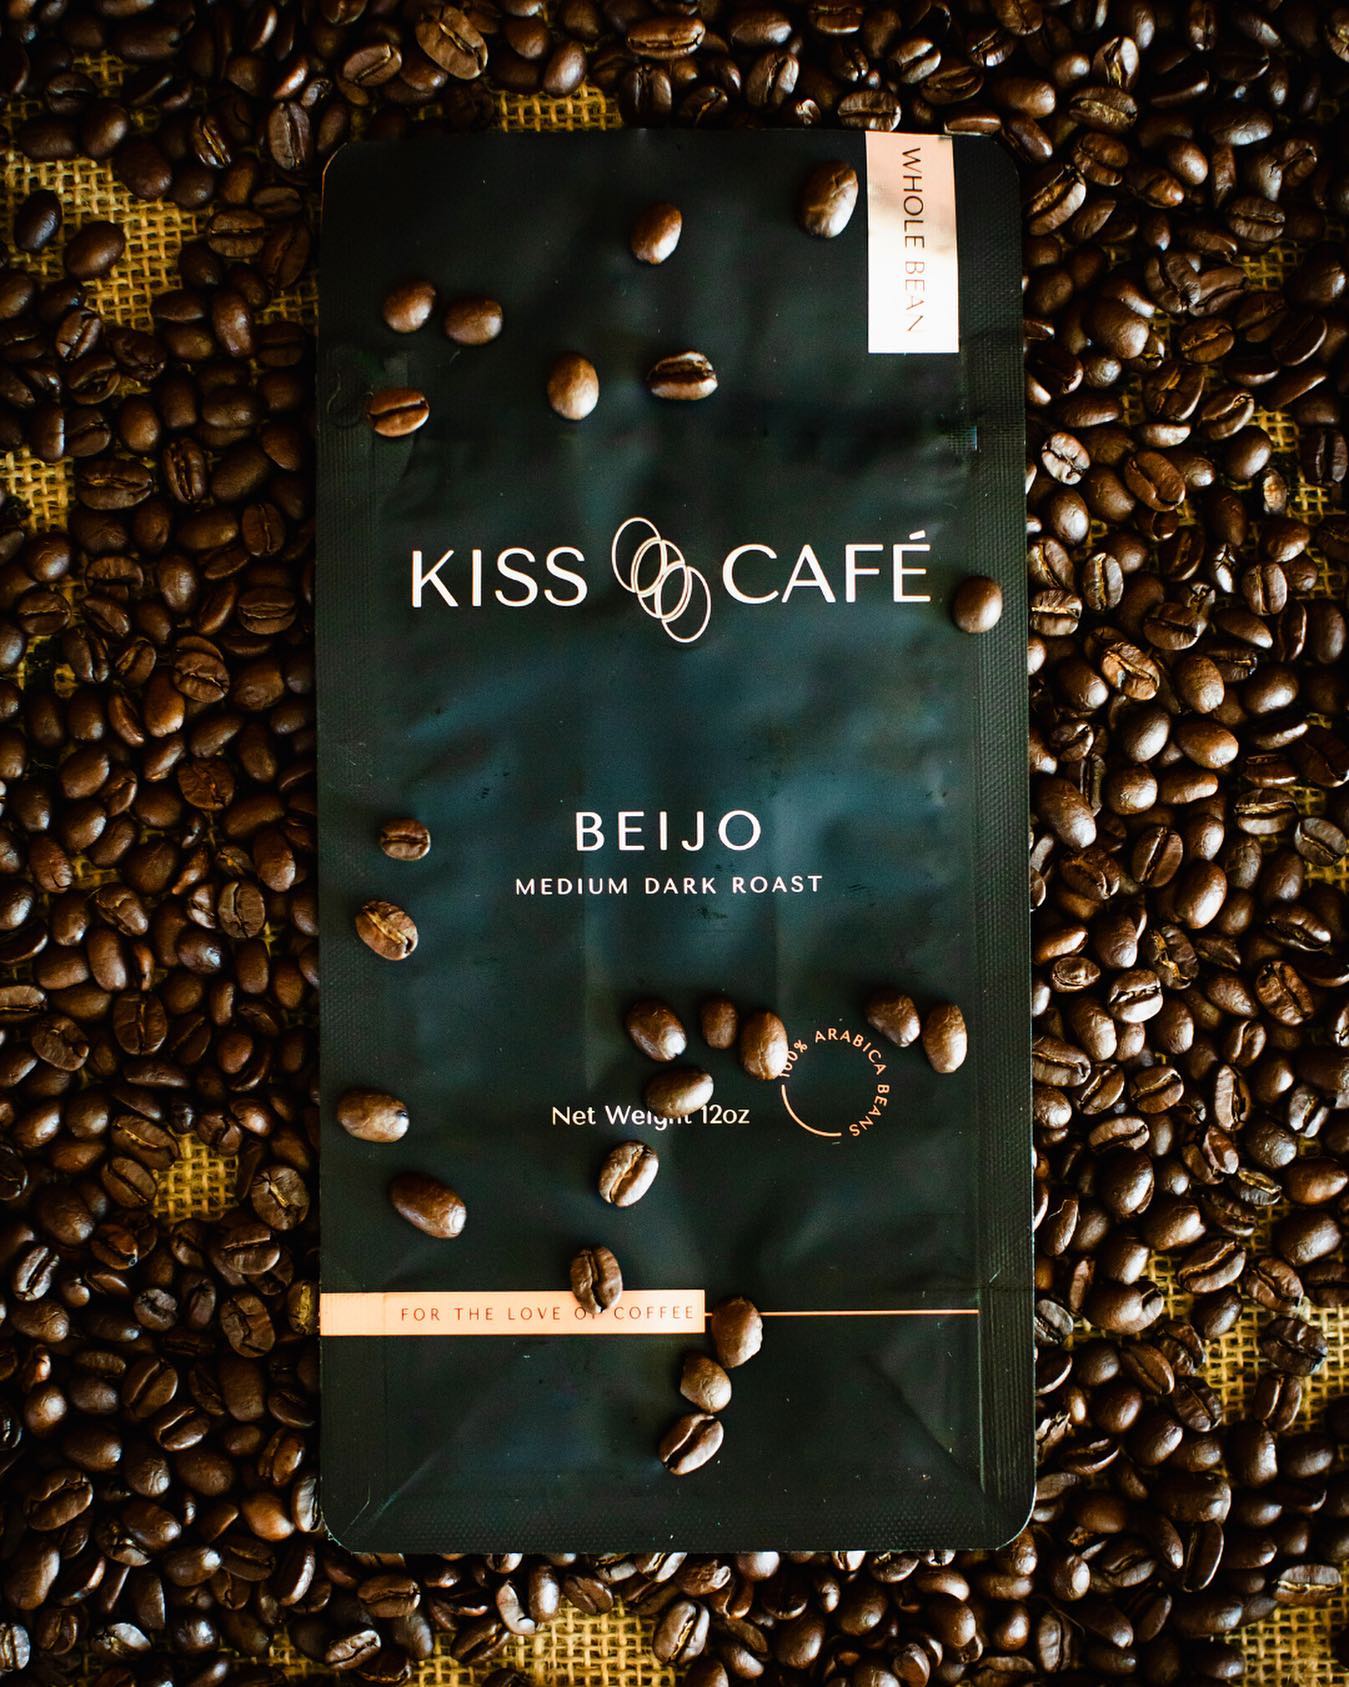 Kiss Café